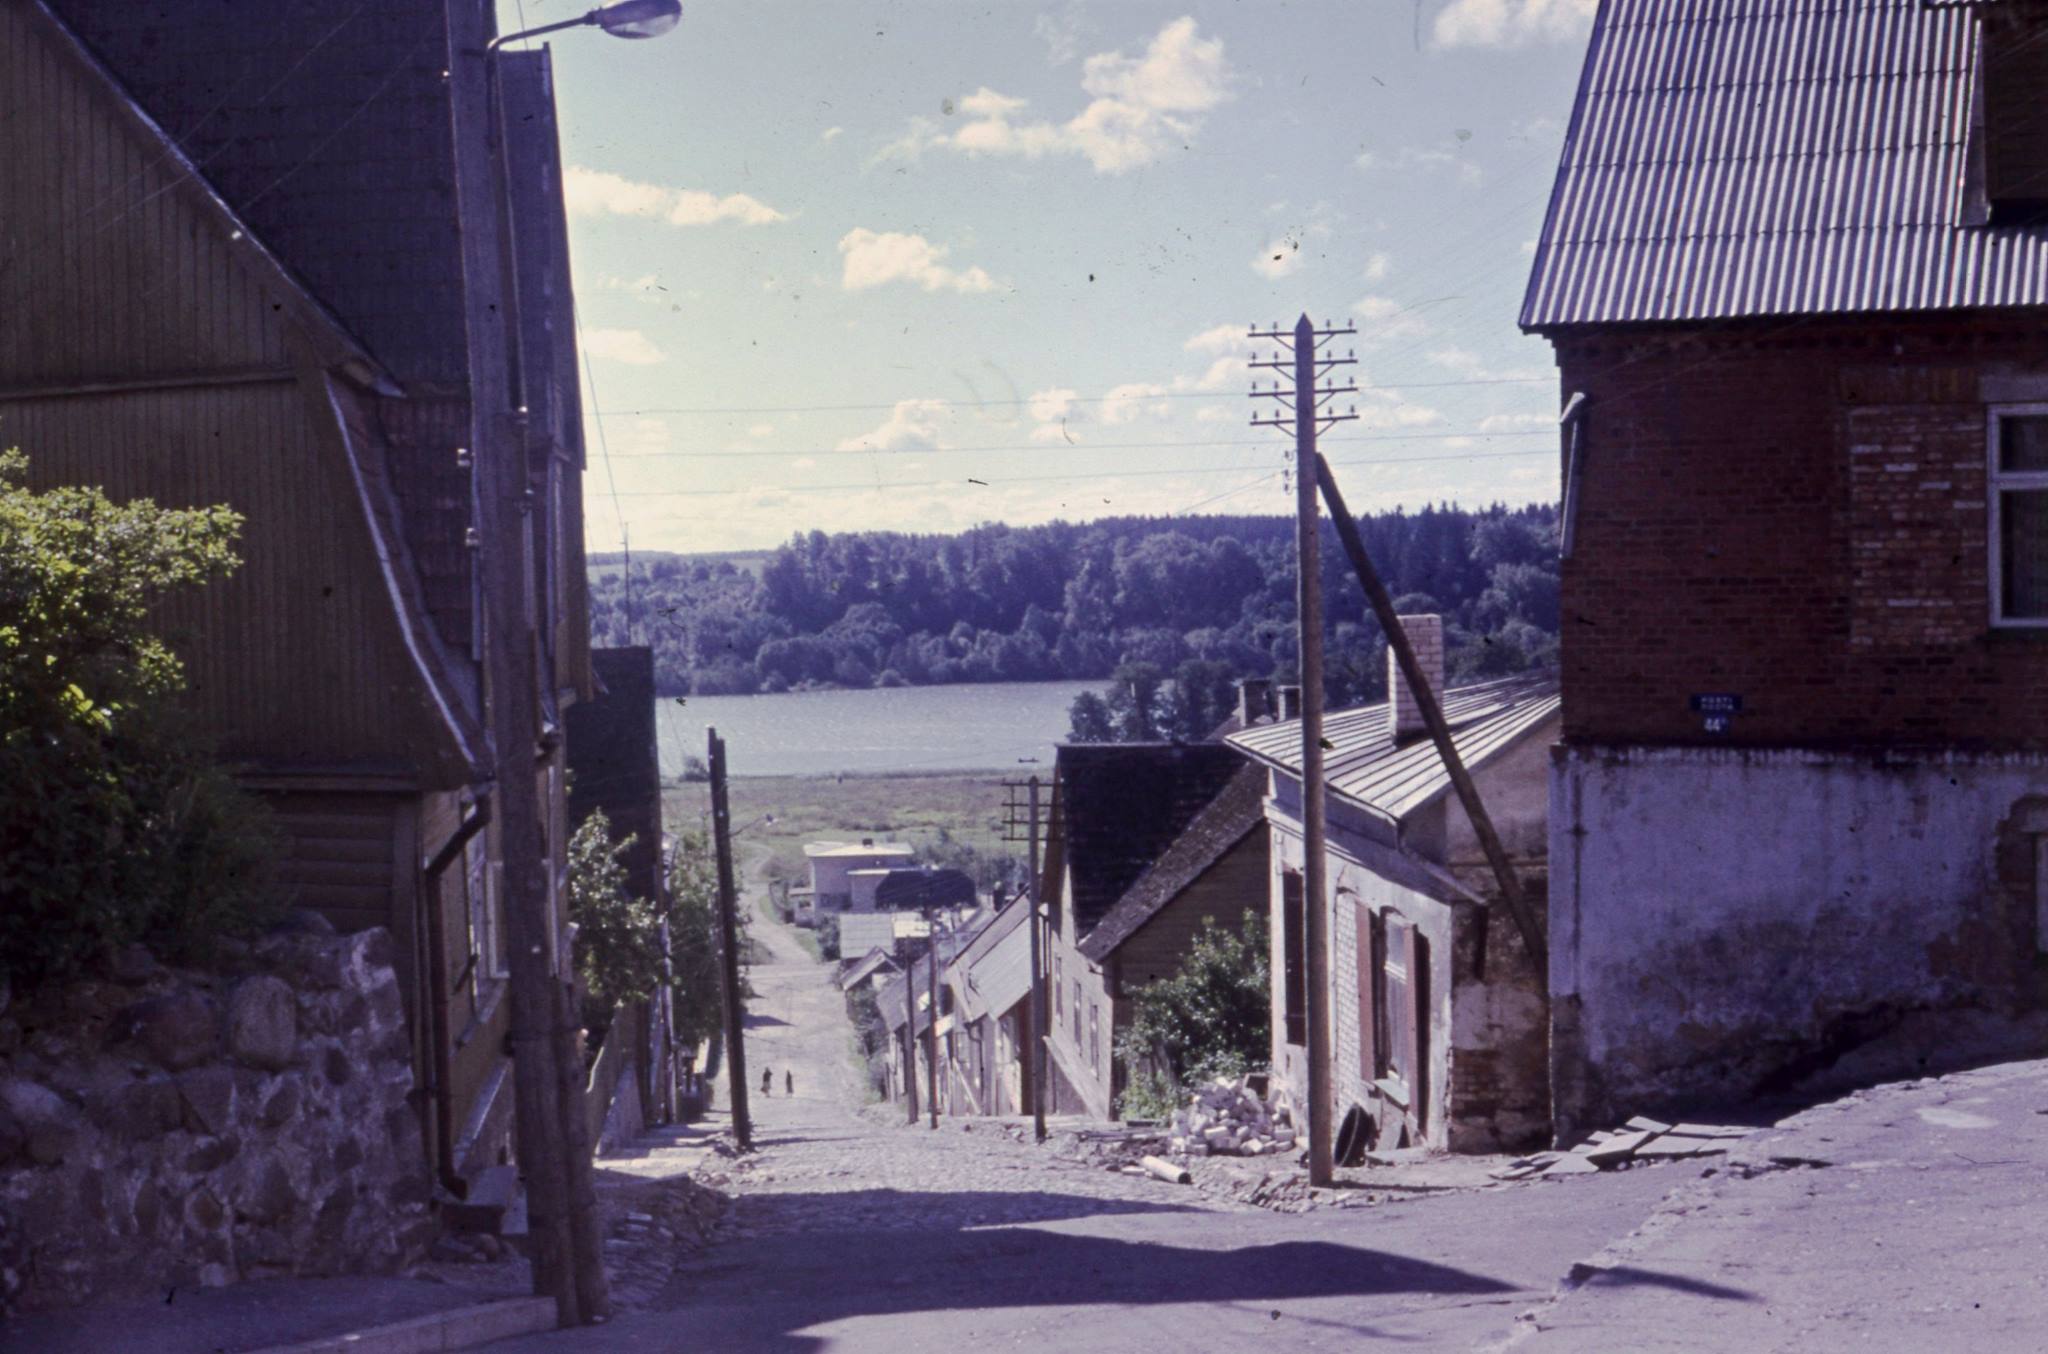 About 1970 Viljandis on the cross of Post and Kõrgemägi.